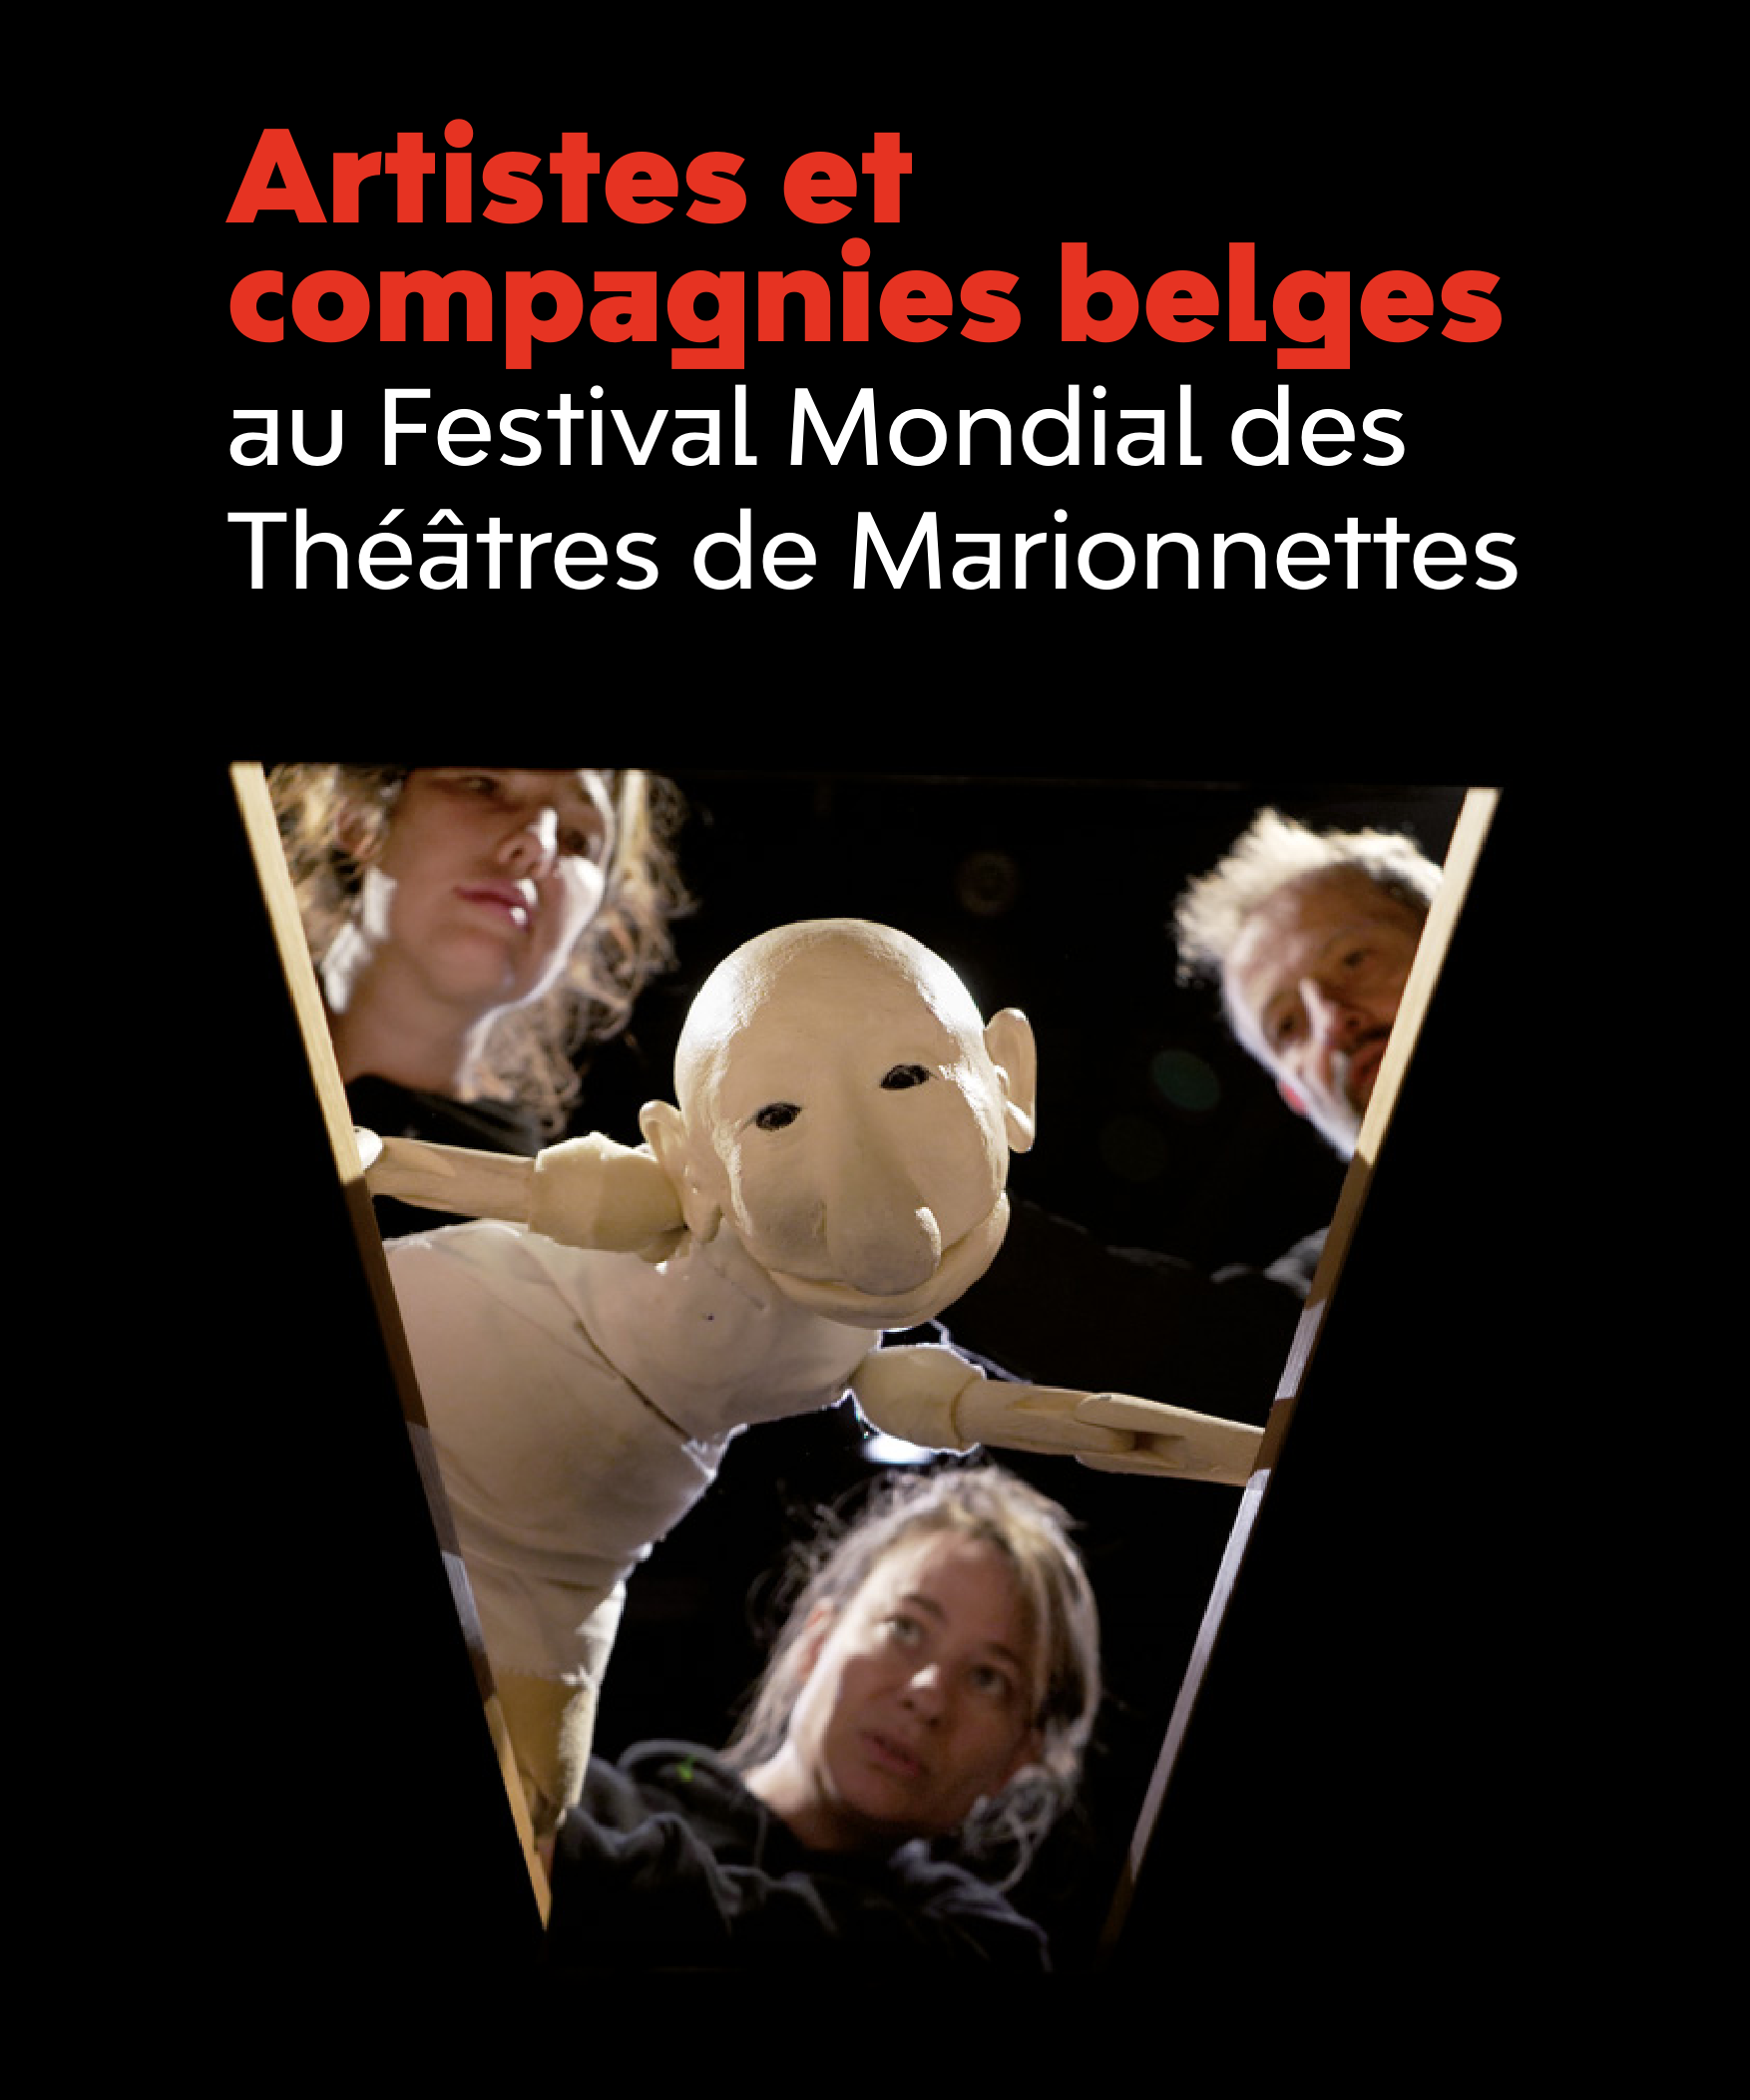 Festival Mondial des Théâtres de Marionnettes